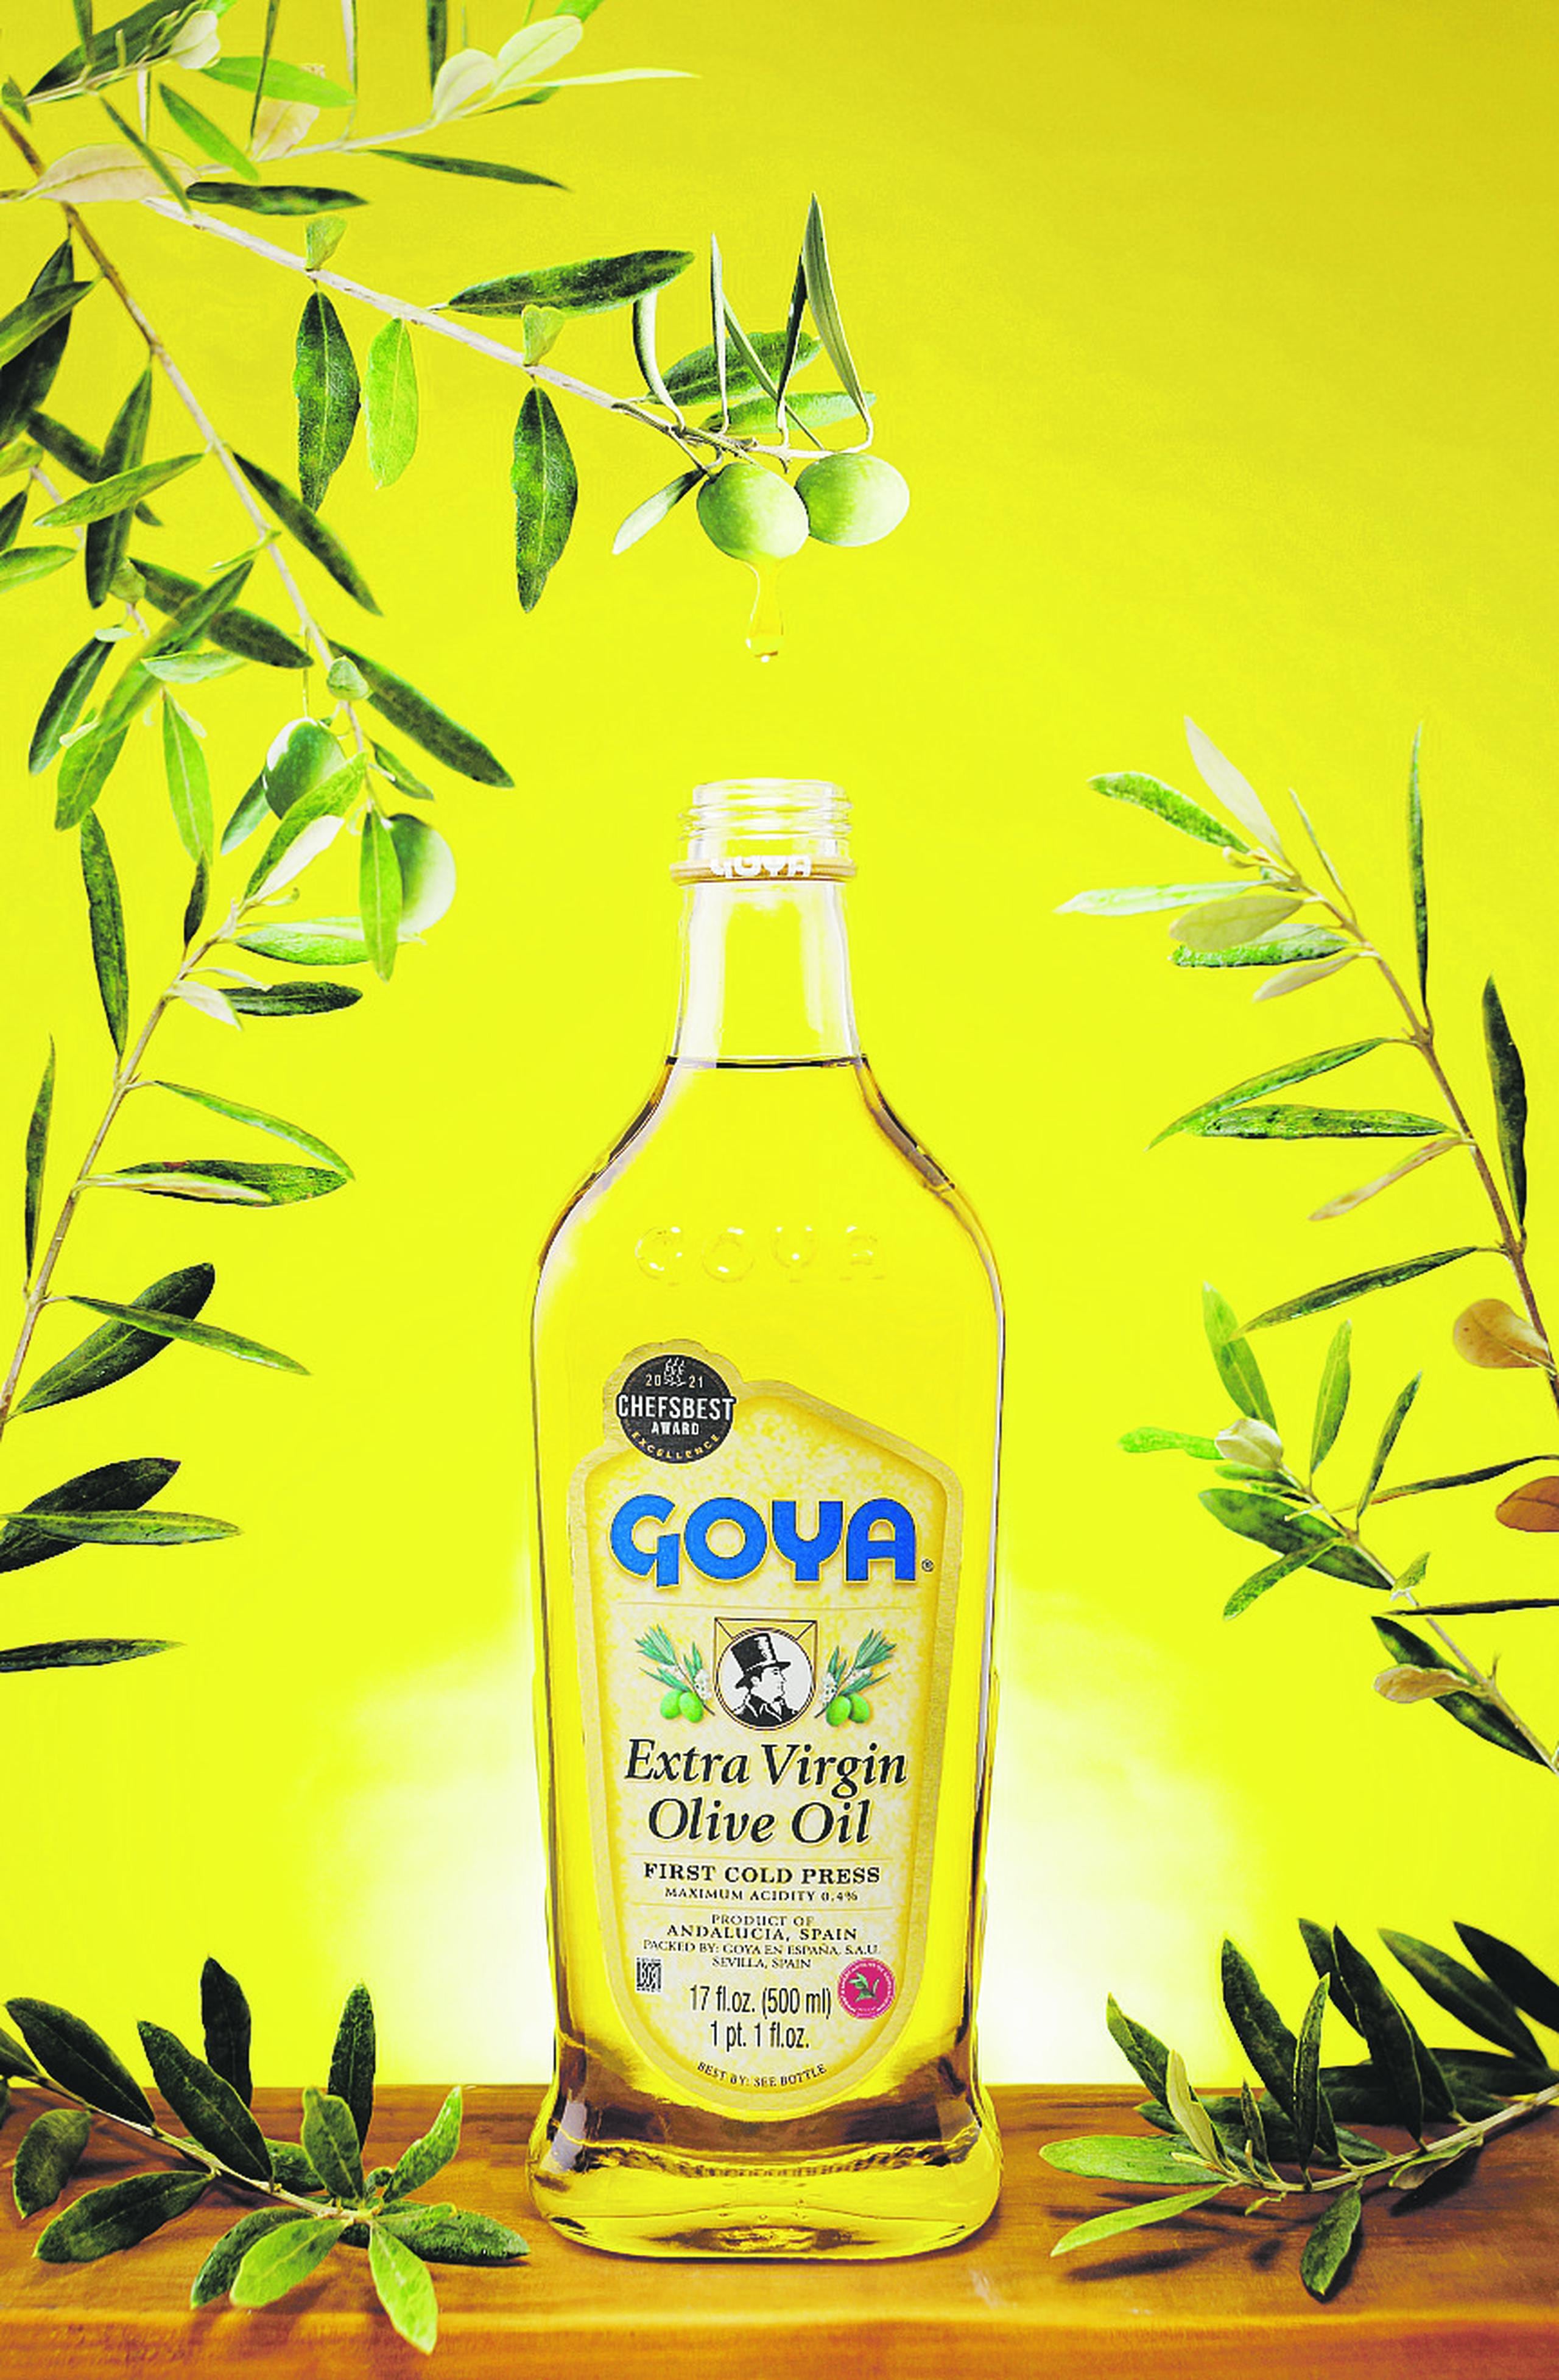 Los Aceites de Oliva GOYA son aclamados mundialmente por su sabor y calidad superior.